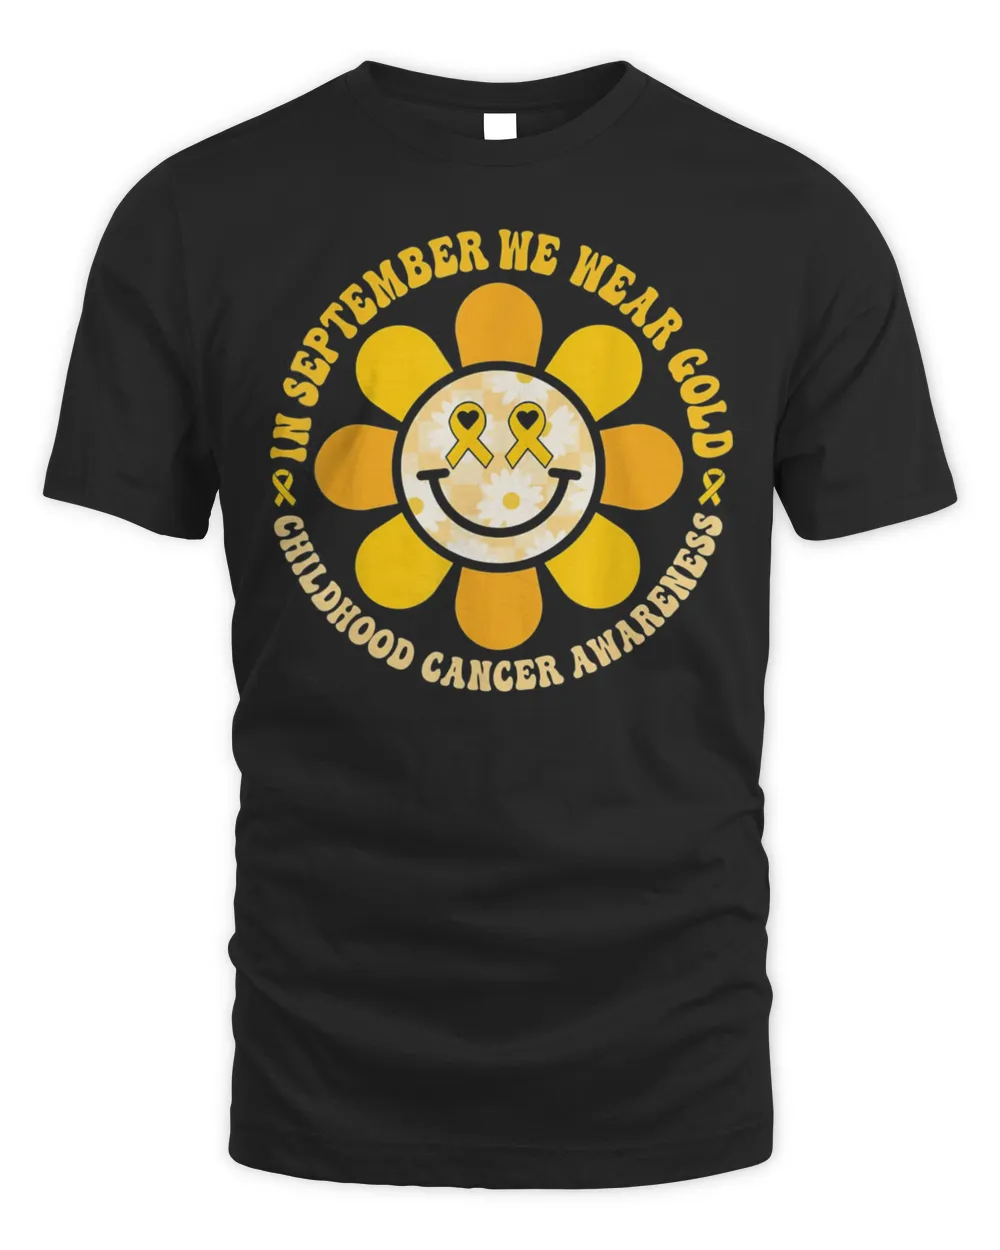 Wear Gold Childhood Cancer Awareness Warrior Fight Hippie Shirt